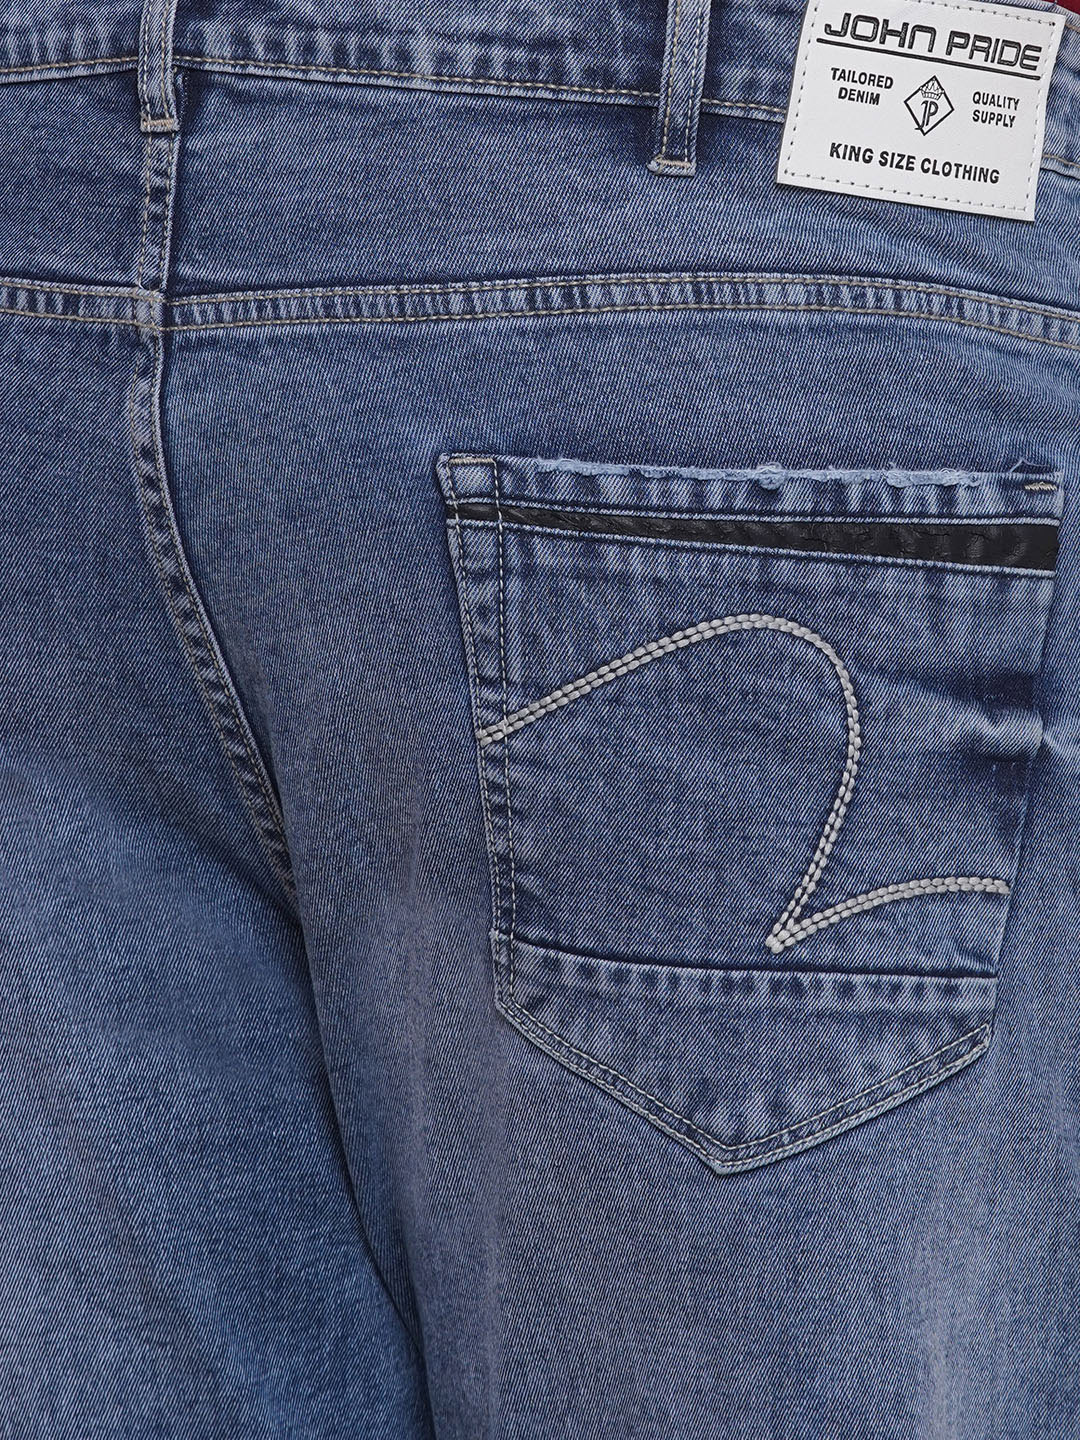 bottomwear/jeans/EJPJ25085/ejpj25085-2.jpg